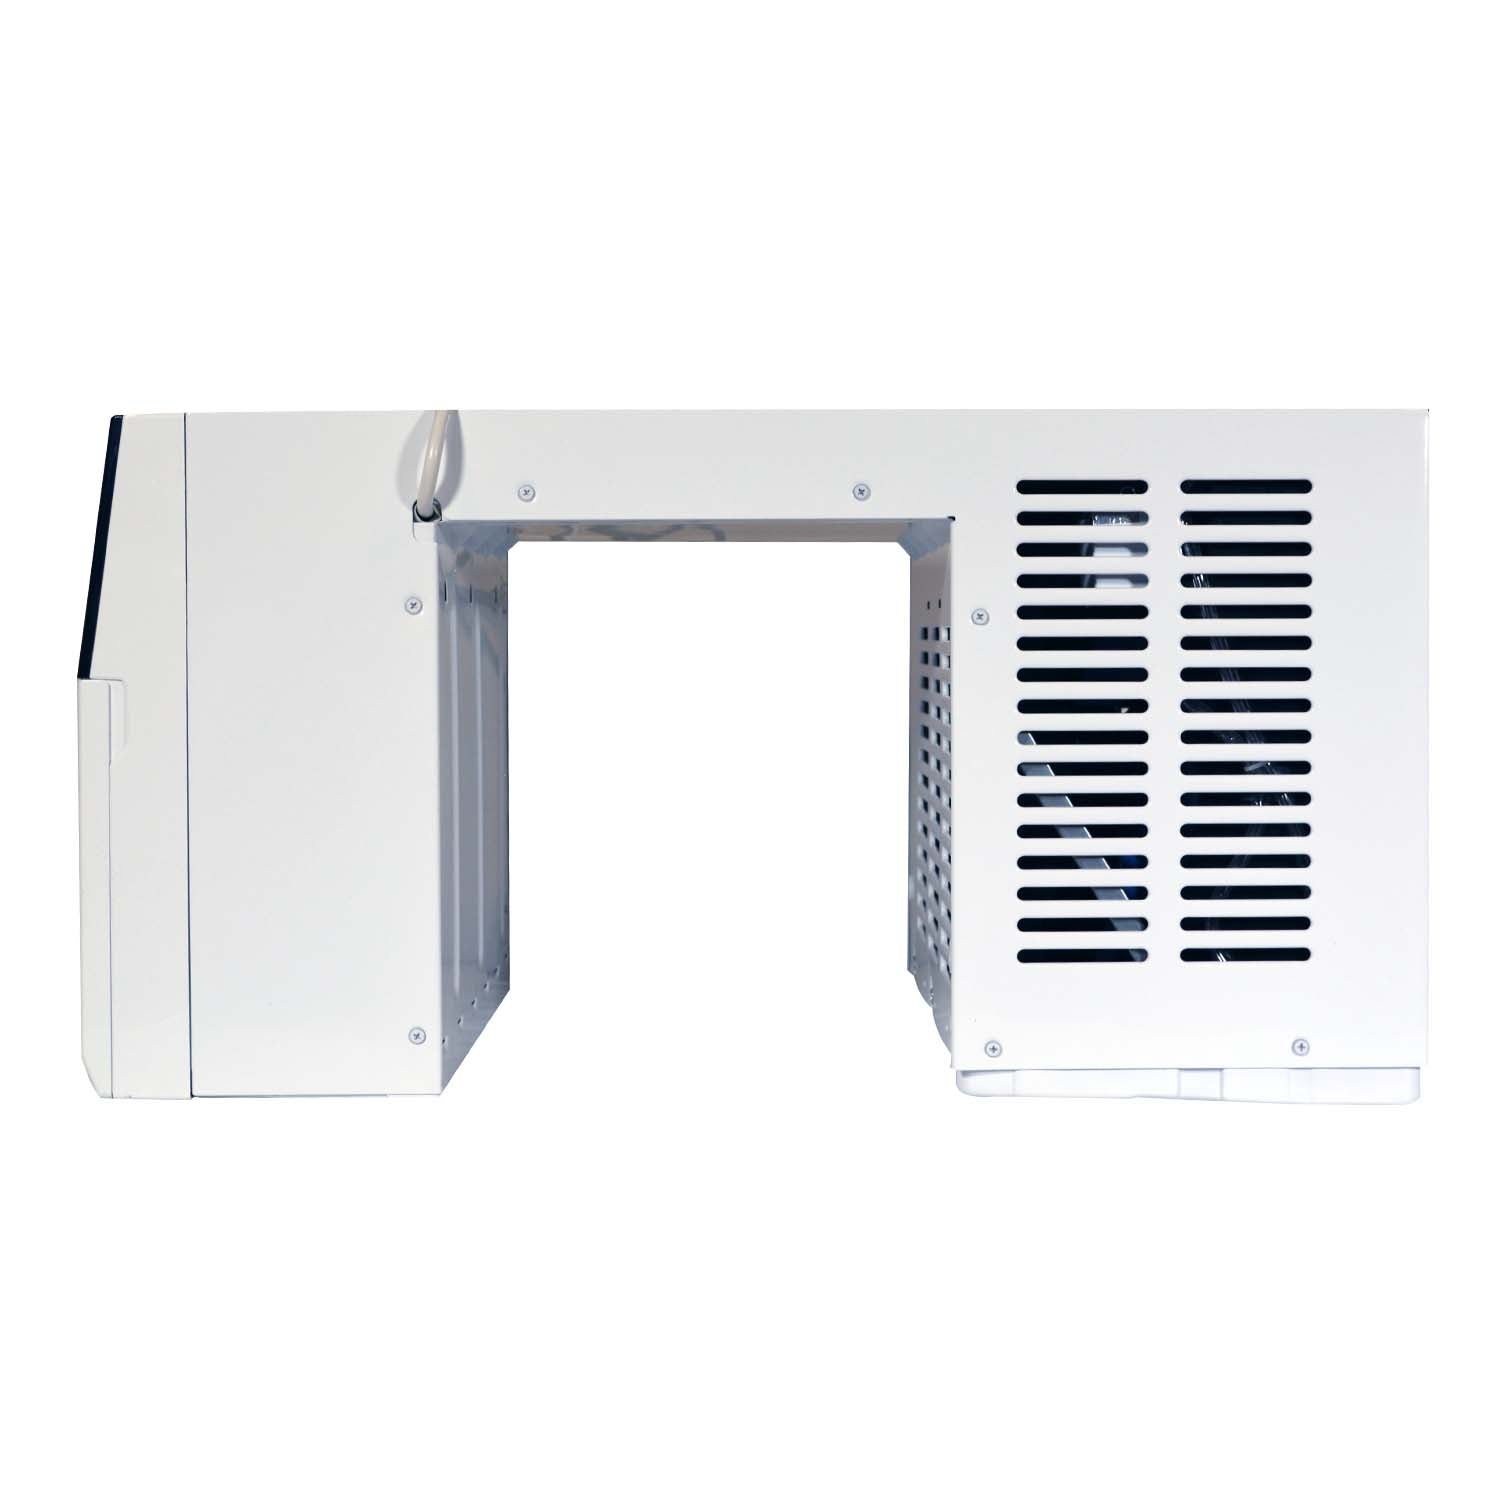 Soleus Air 8,000 BTU Micro-Split Saddle Air Conditioner with Wifi